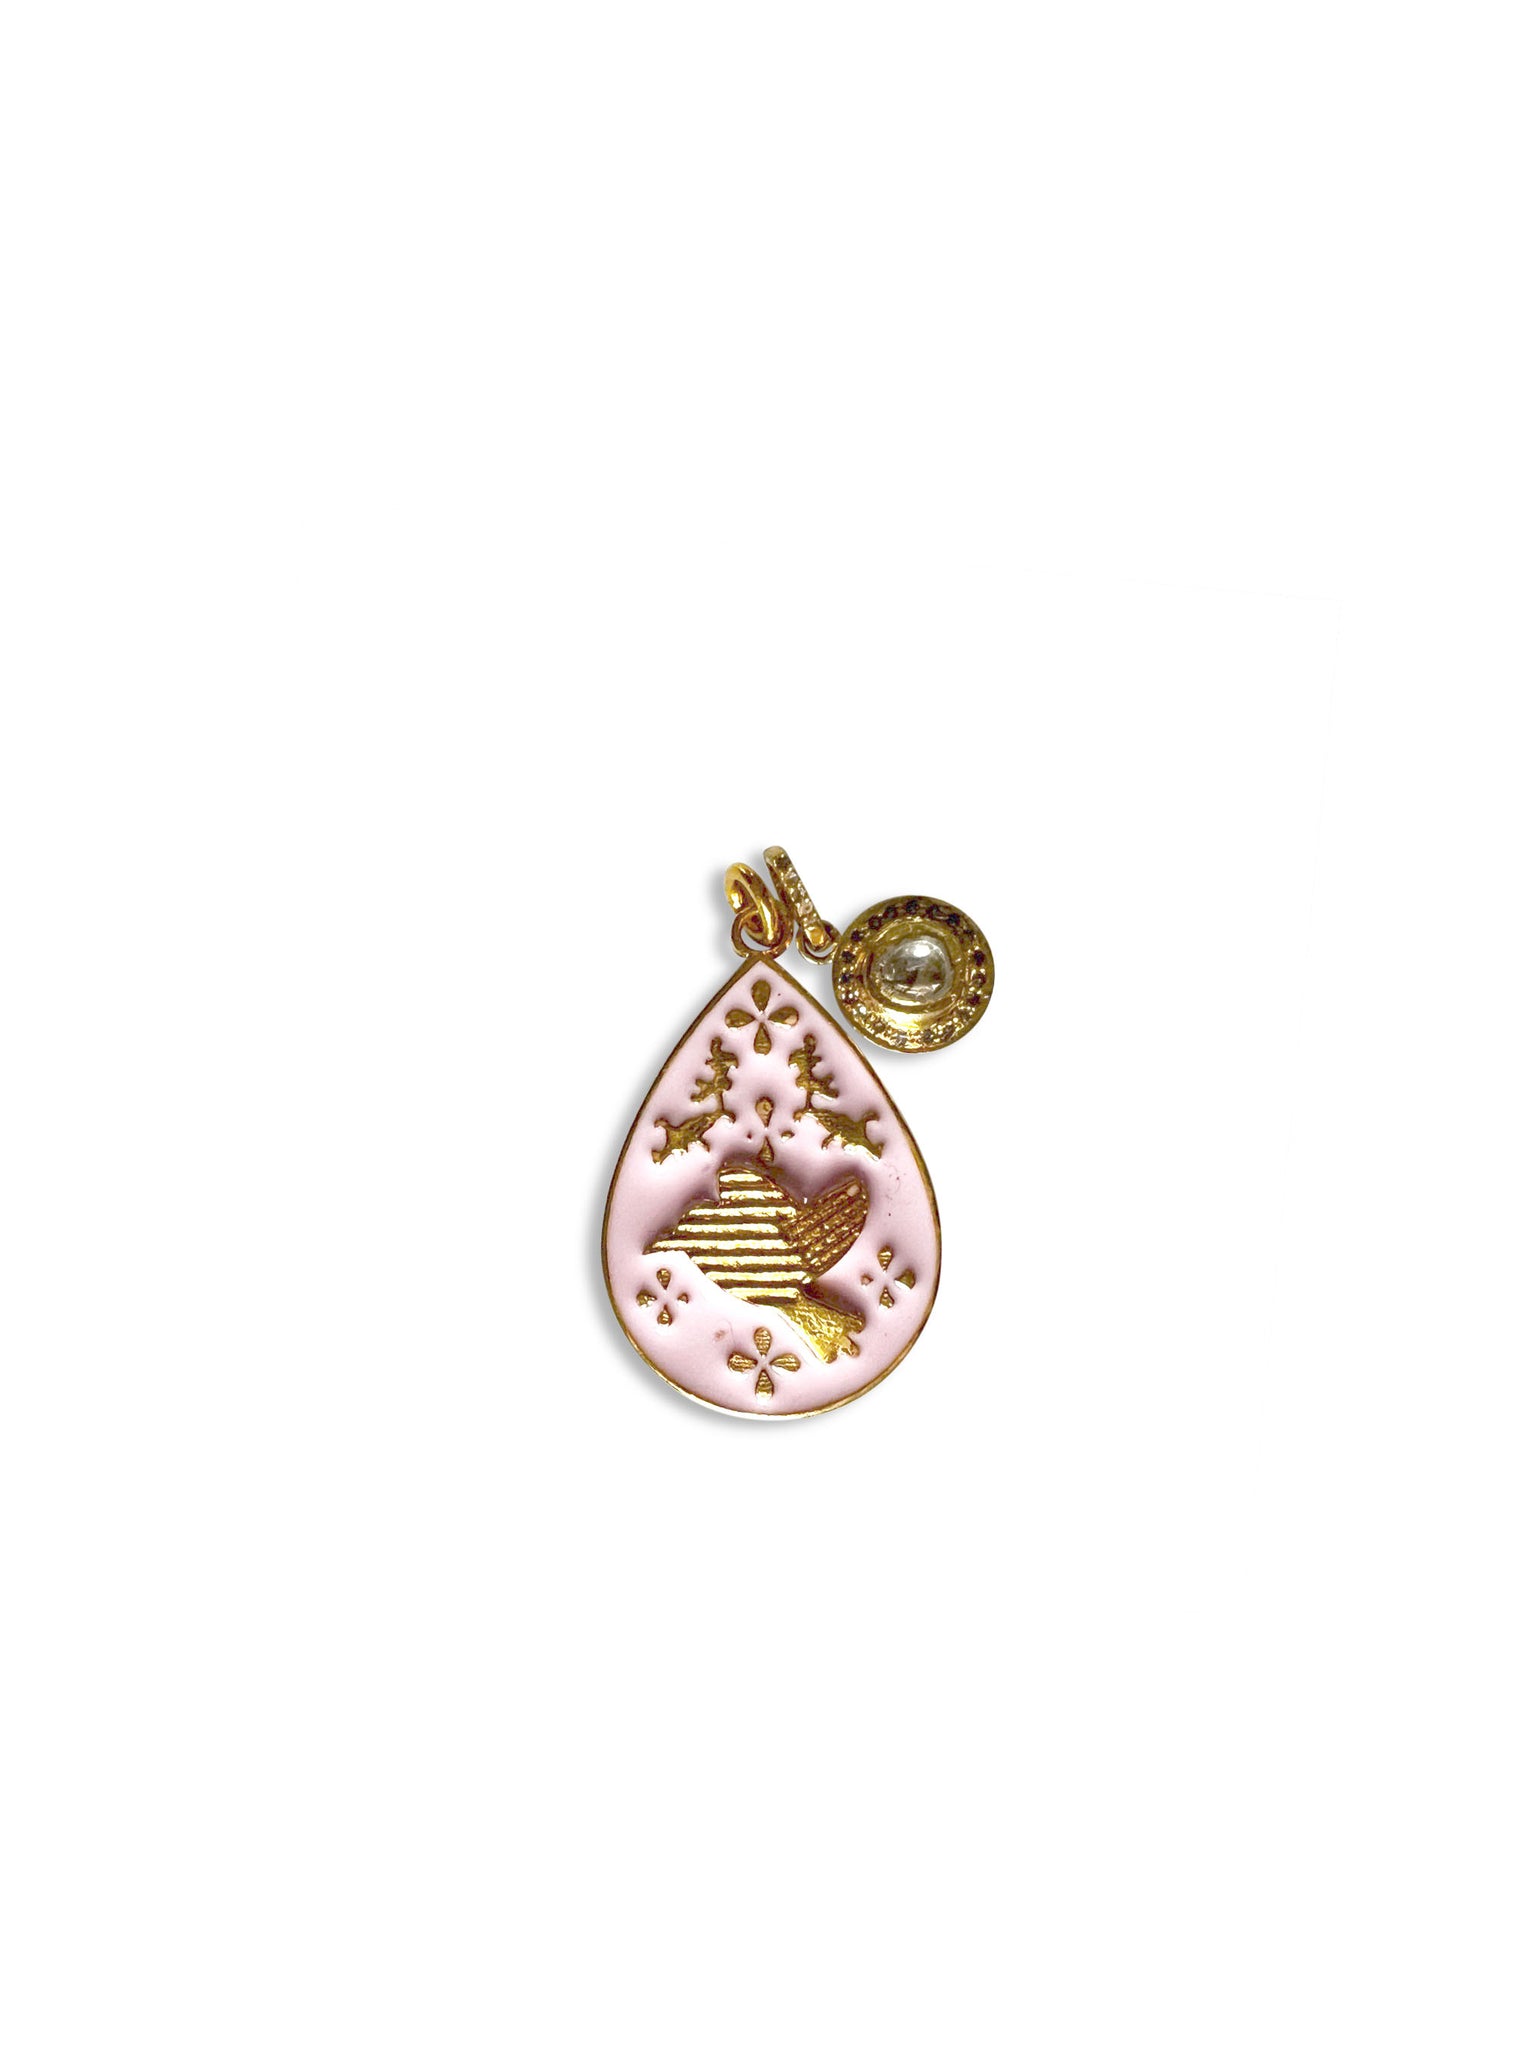 Polki Diamond Charm with Pink Enamel Bird Pendant